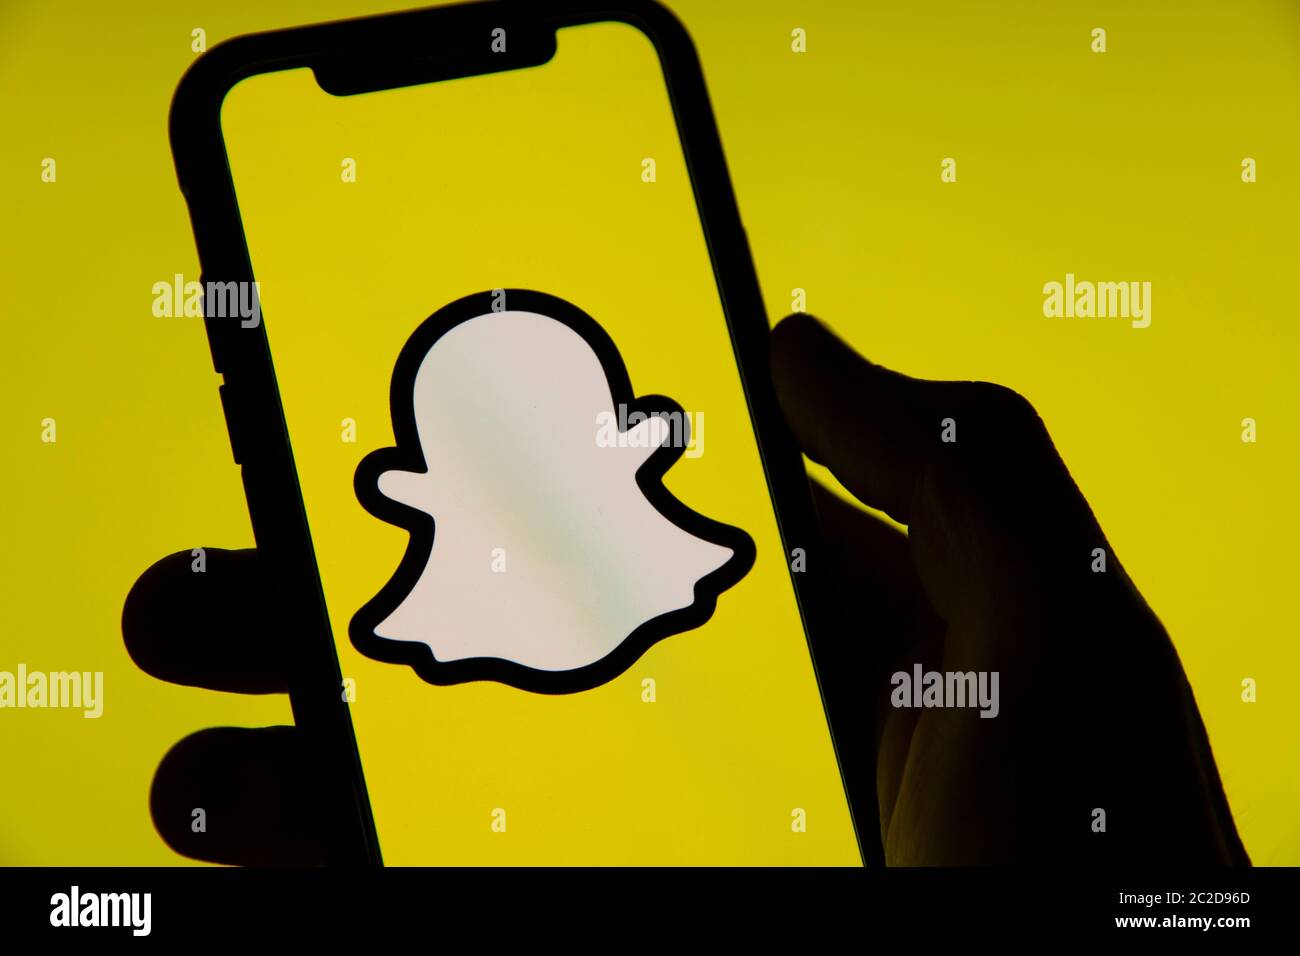 LONDRES, Royaume-Uni - JUIN 2020 : logo Snapchat sur les réseaux sociaux sur l'écran d'un smartphone Banque D'Images